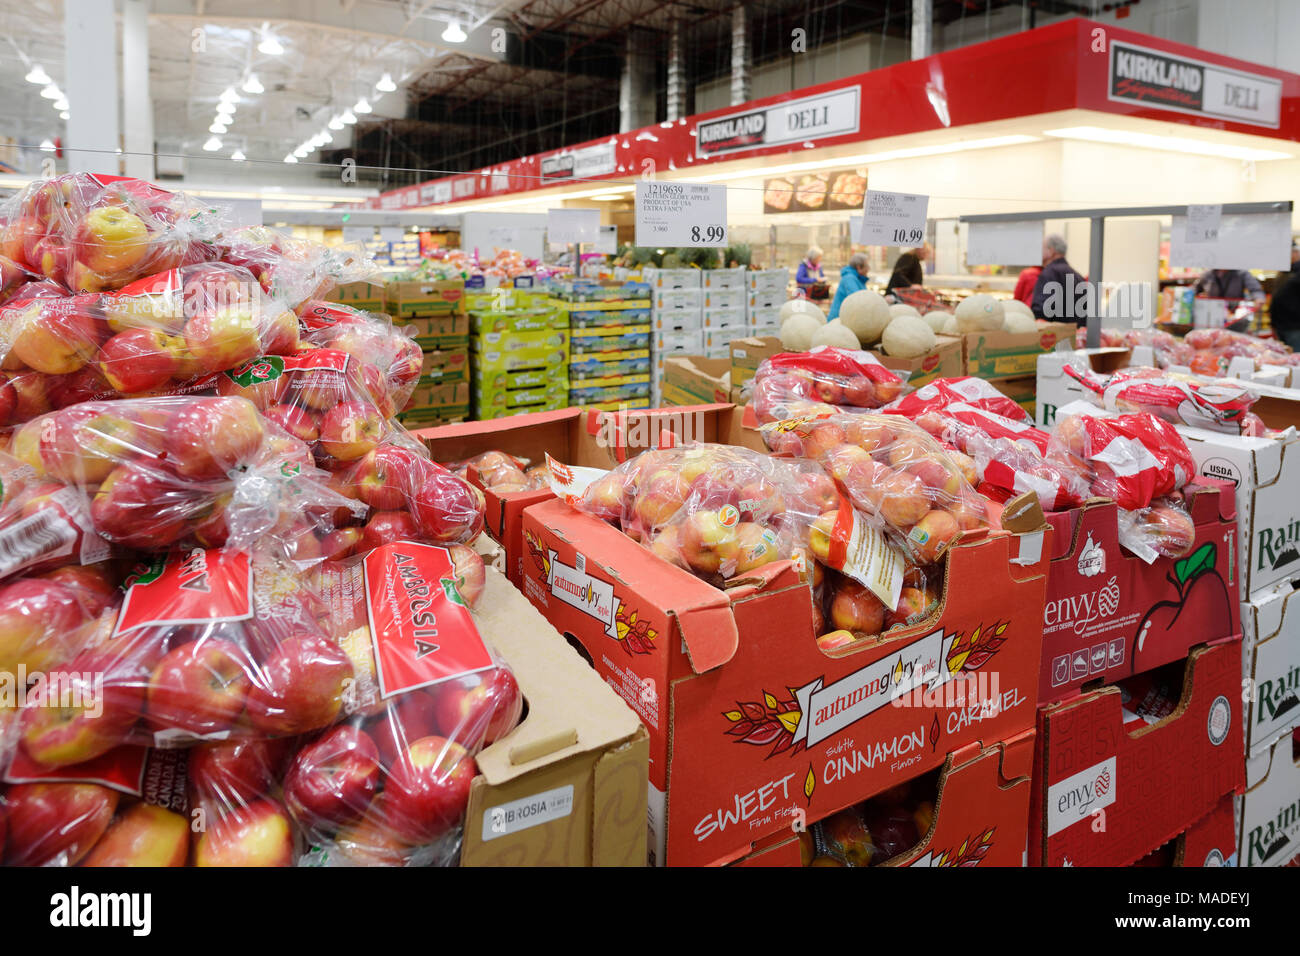 Les pommes et autres fruits et de l'épicerie chez Costco Wholesale Membership warehouse store intérieur alimentation section. Pamplemousses, citrons et limes. British Col Banque D'Images